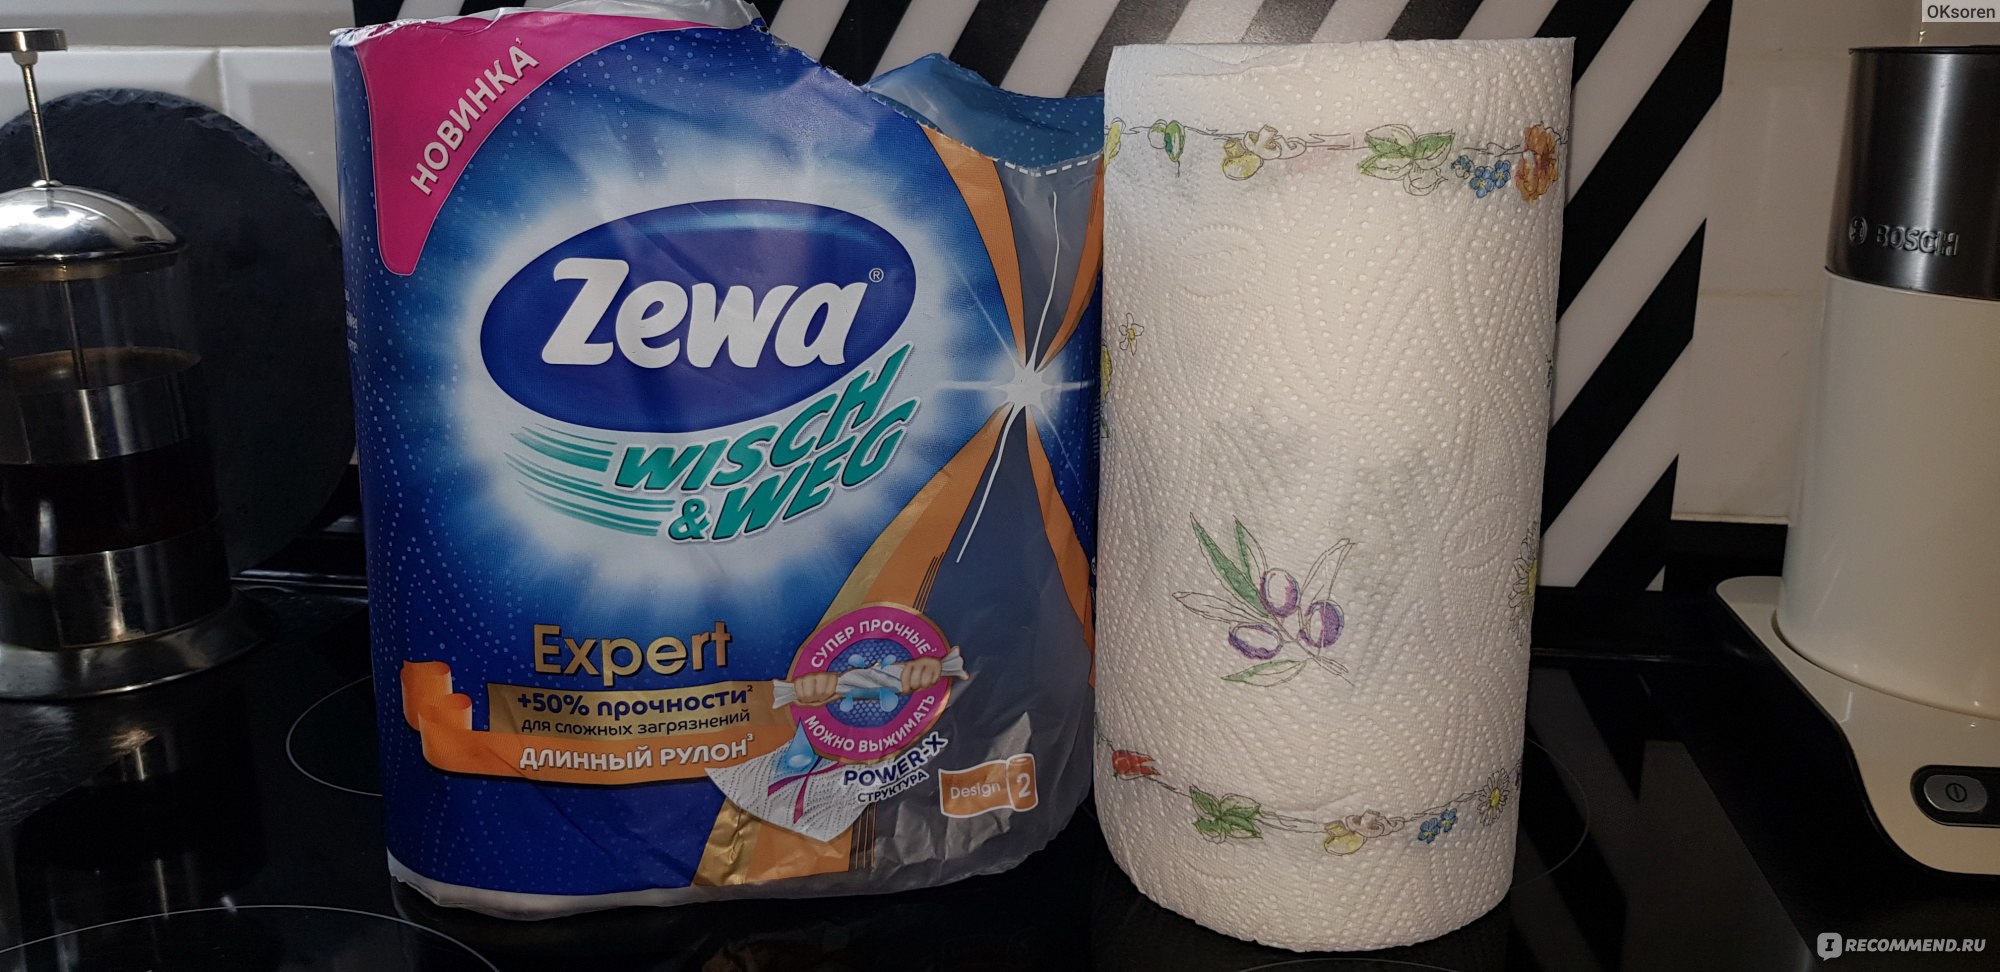 Моющие бумажные полотенца. Бумажные полотенца Zewa эксперт. Бумажные полотенца Zewa Expert Wisch Weg длинный рулон 2 рулона. Бумажные полотенца Zewa Wisch Weg. Бумажные полотенца Zewa длинный рулон.